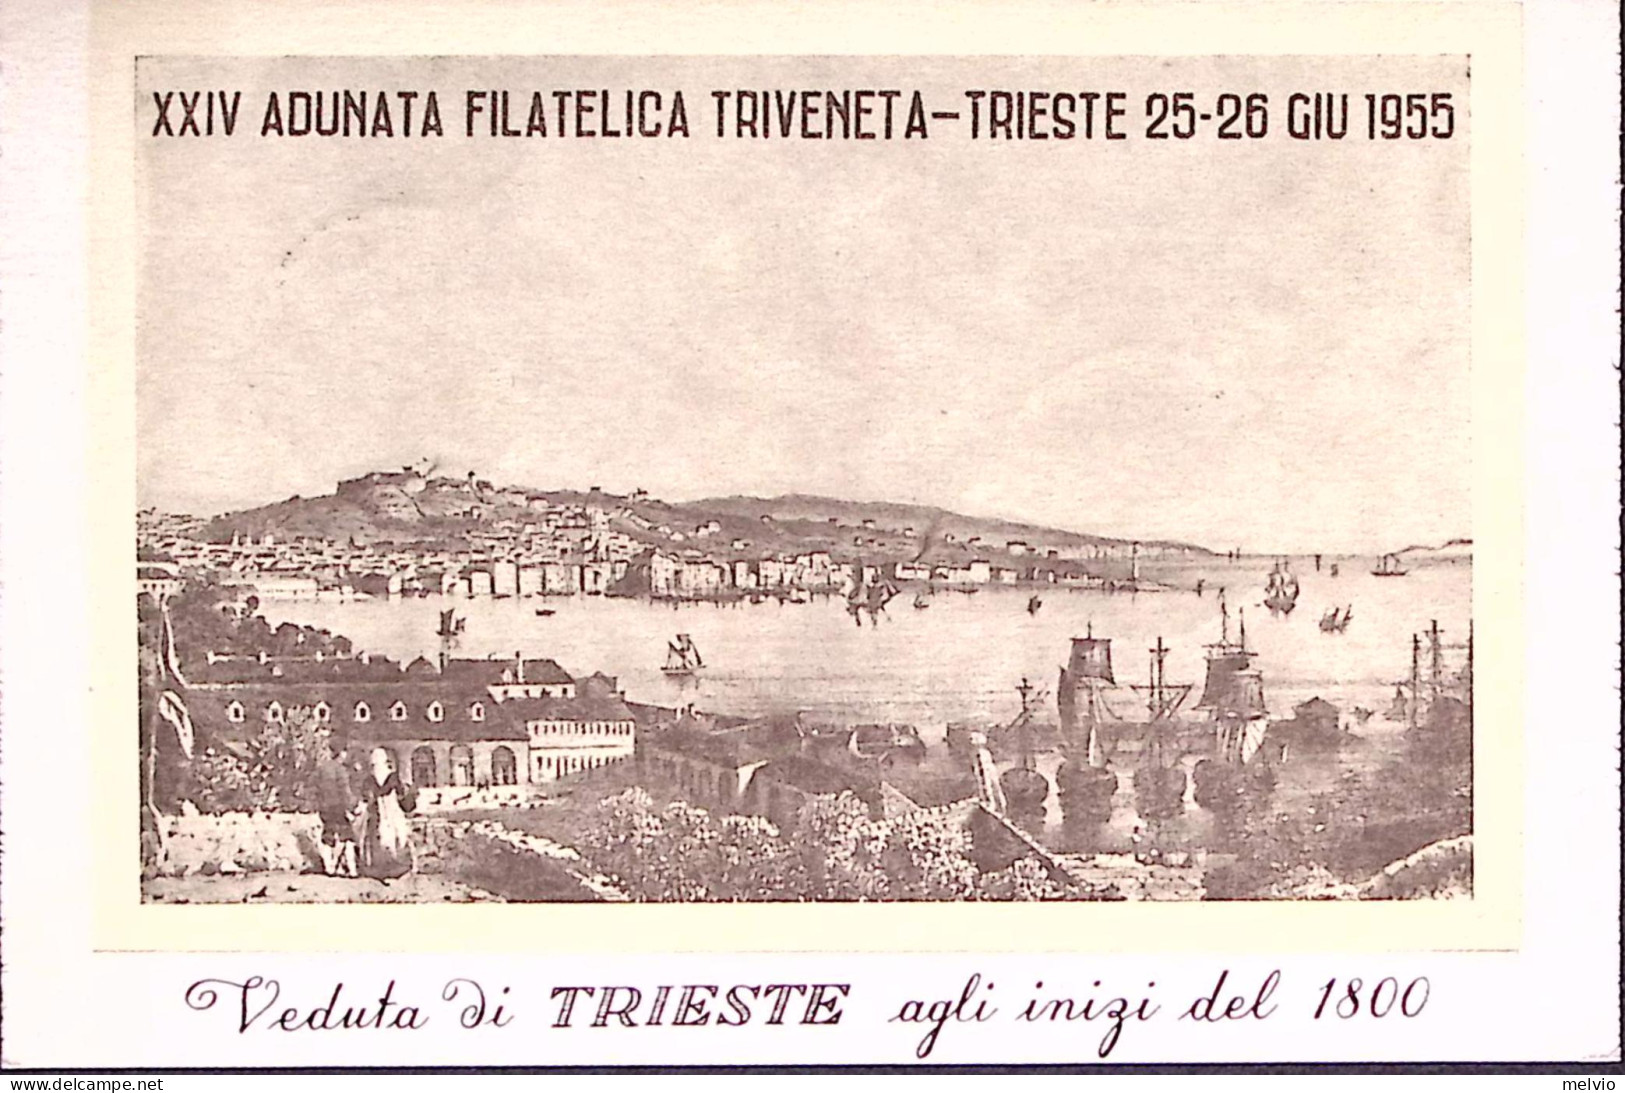 1955-TRIESTE Giornata Filatelica Triveneta Annullo Speciale (26.6) Su Cartolina - Trieste